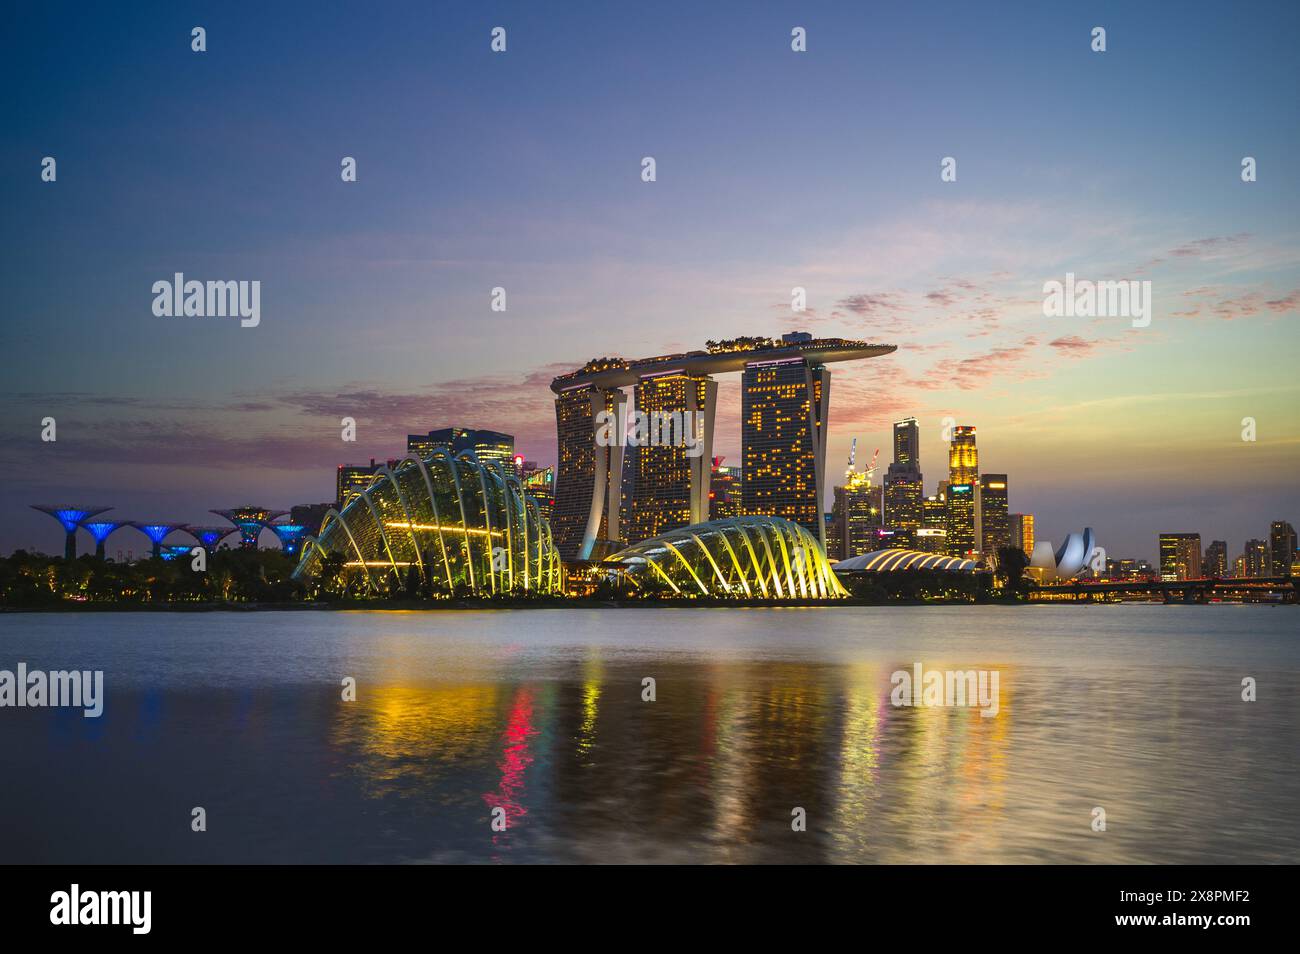 4 febbraio 2020: Skyline di singapore presso la baia del porto turistico con un edificio iconico come il superalbero, le sabbie e il museo artscience. Marina Bay è il nuovo d Foto Stock